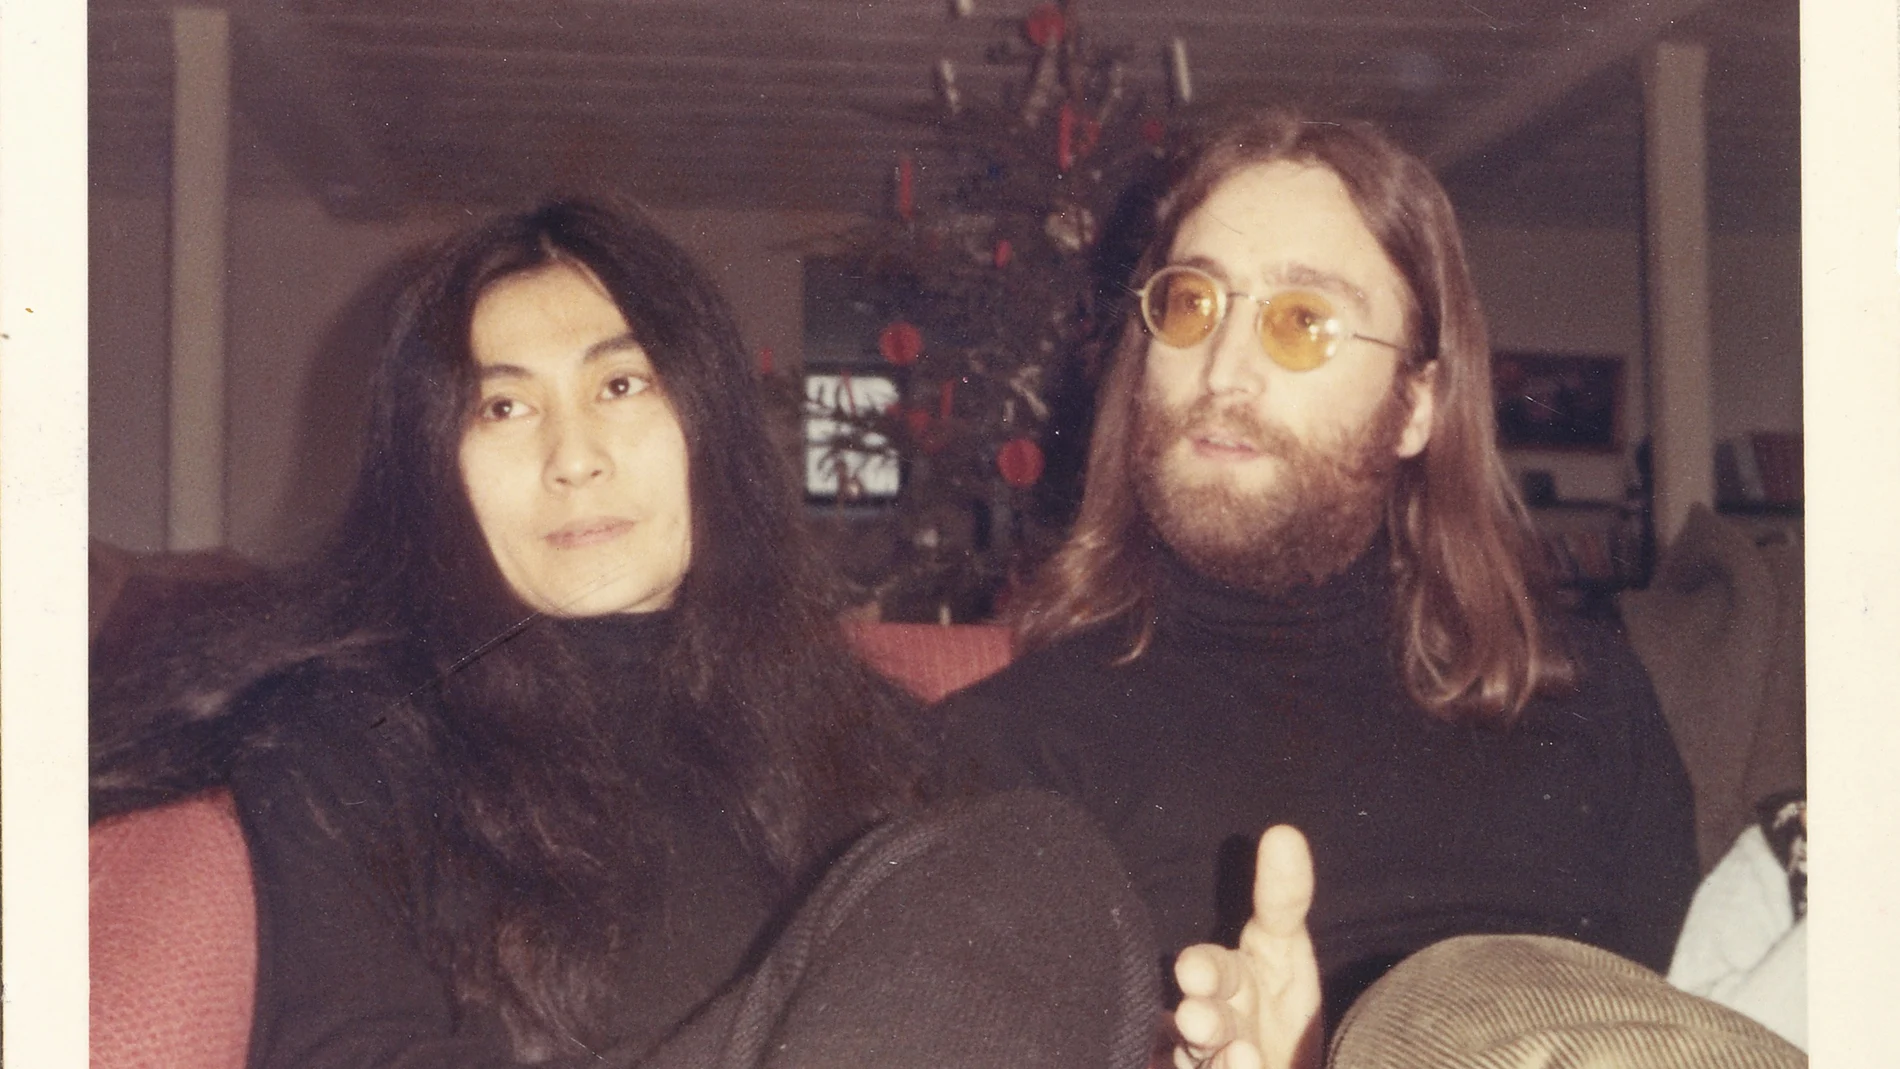 John Lennon y Yoko Ono en Thy, al norte de Dinamarca, fotografiados para el periódico local por unos estudiantes